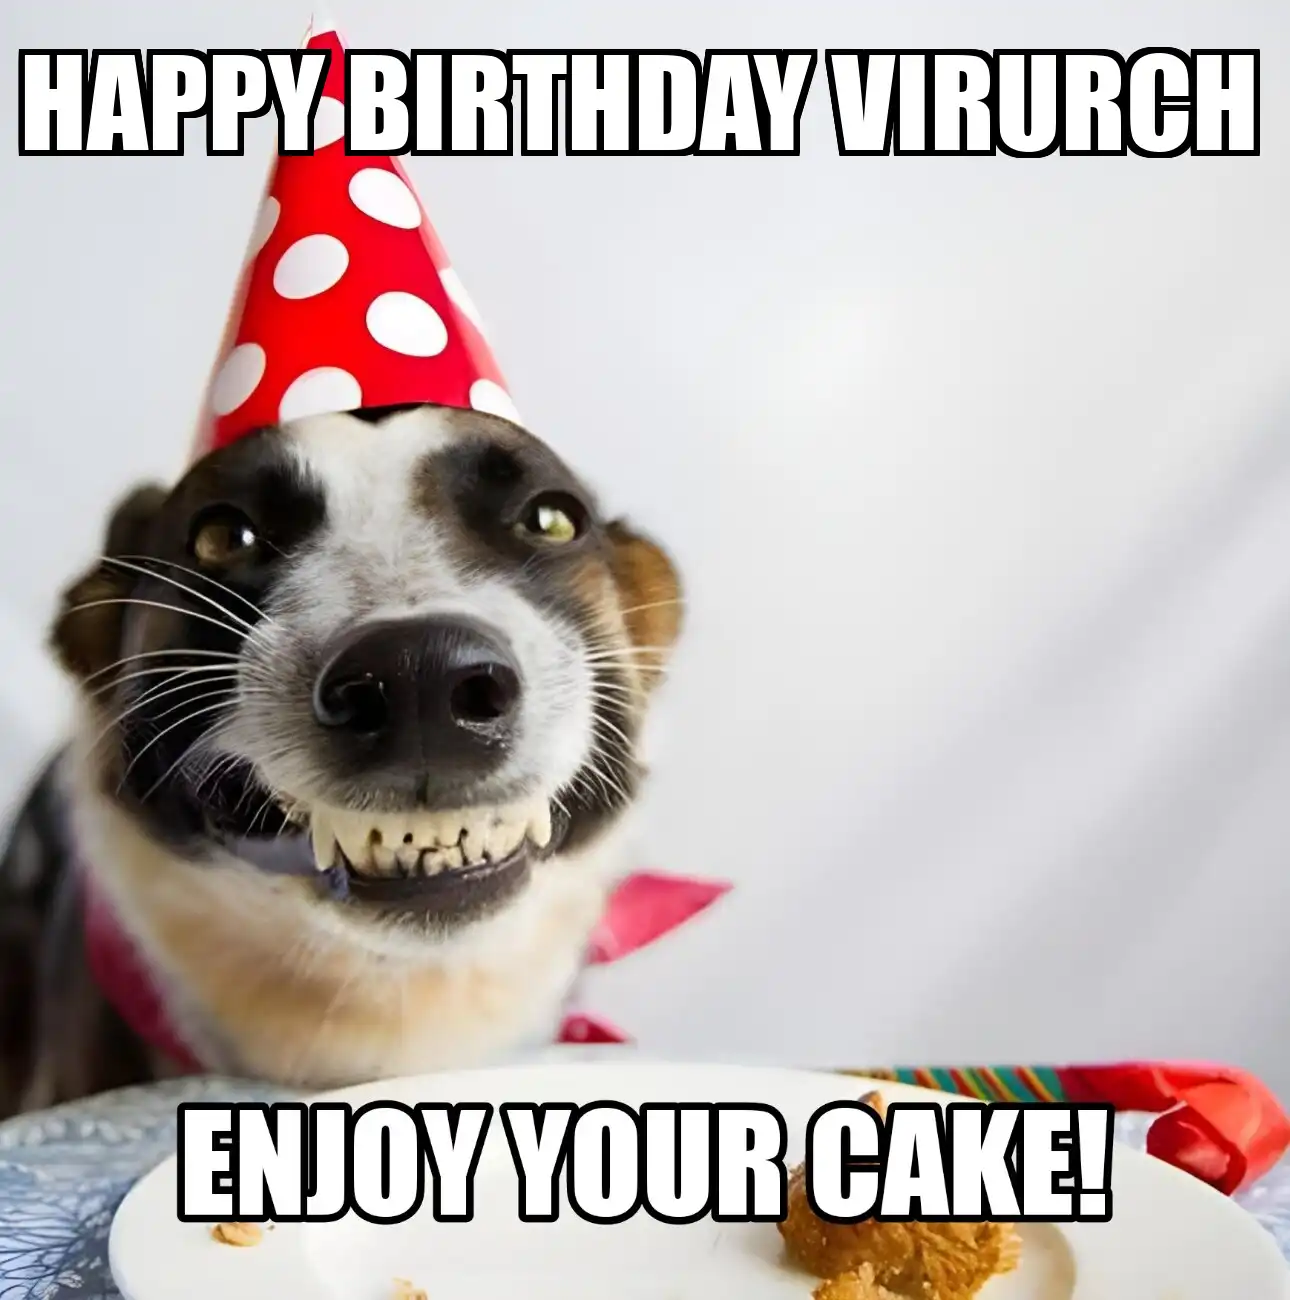 Happy Birthday Virurch Enjoy Your Cake Dog Meme